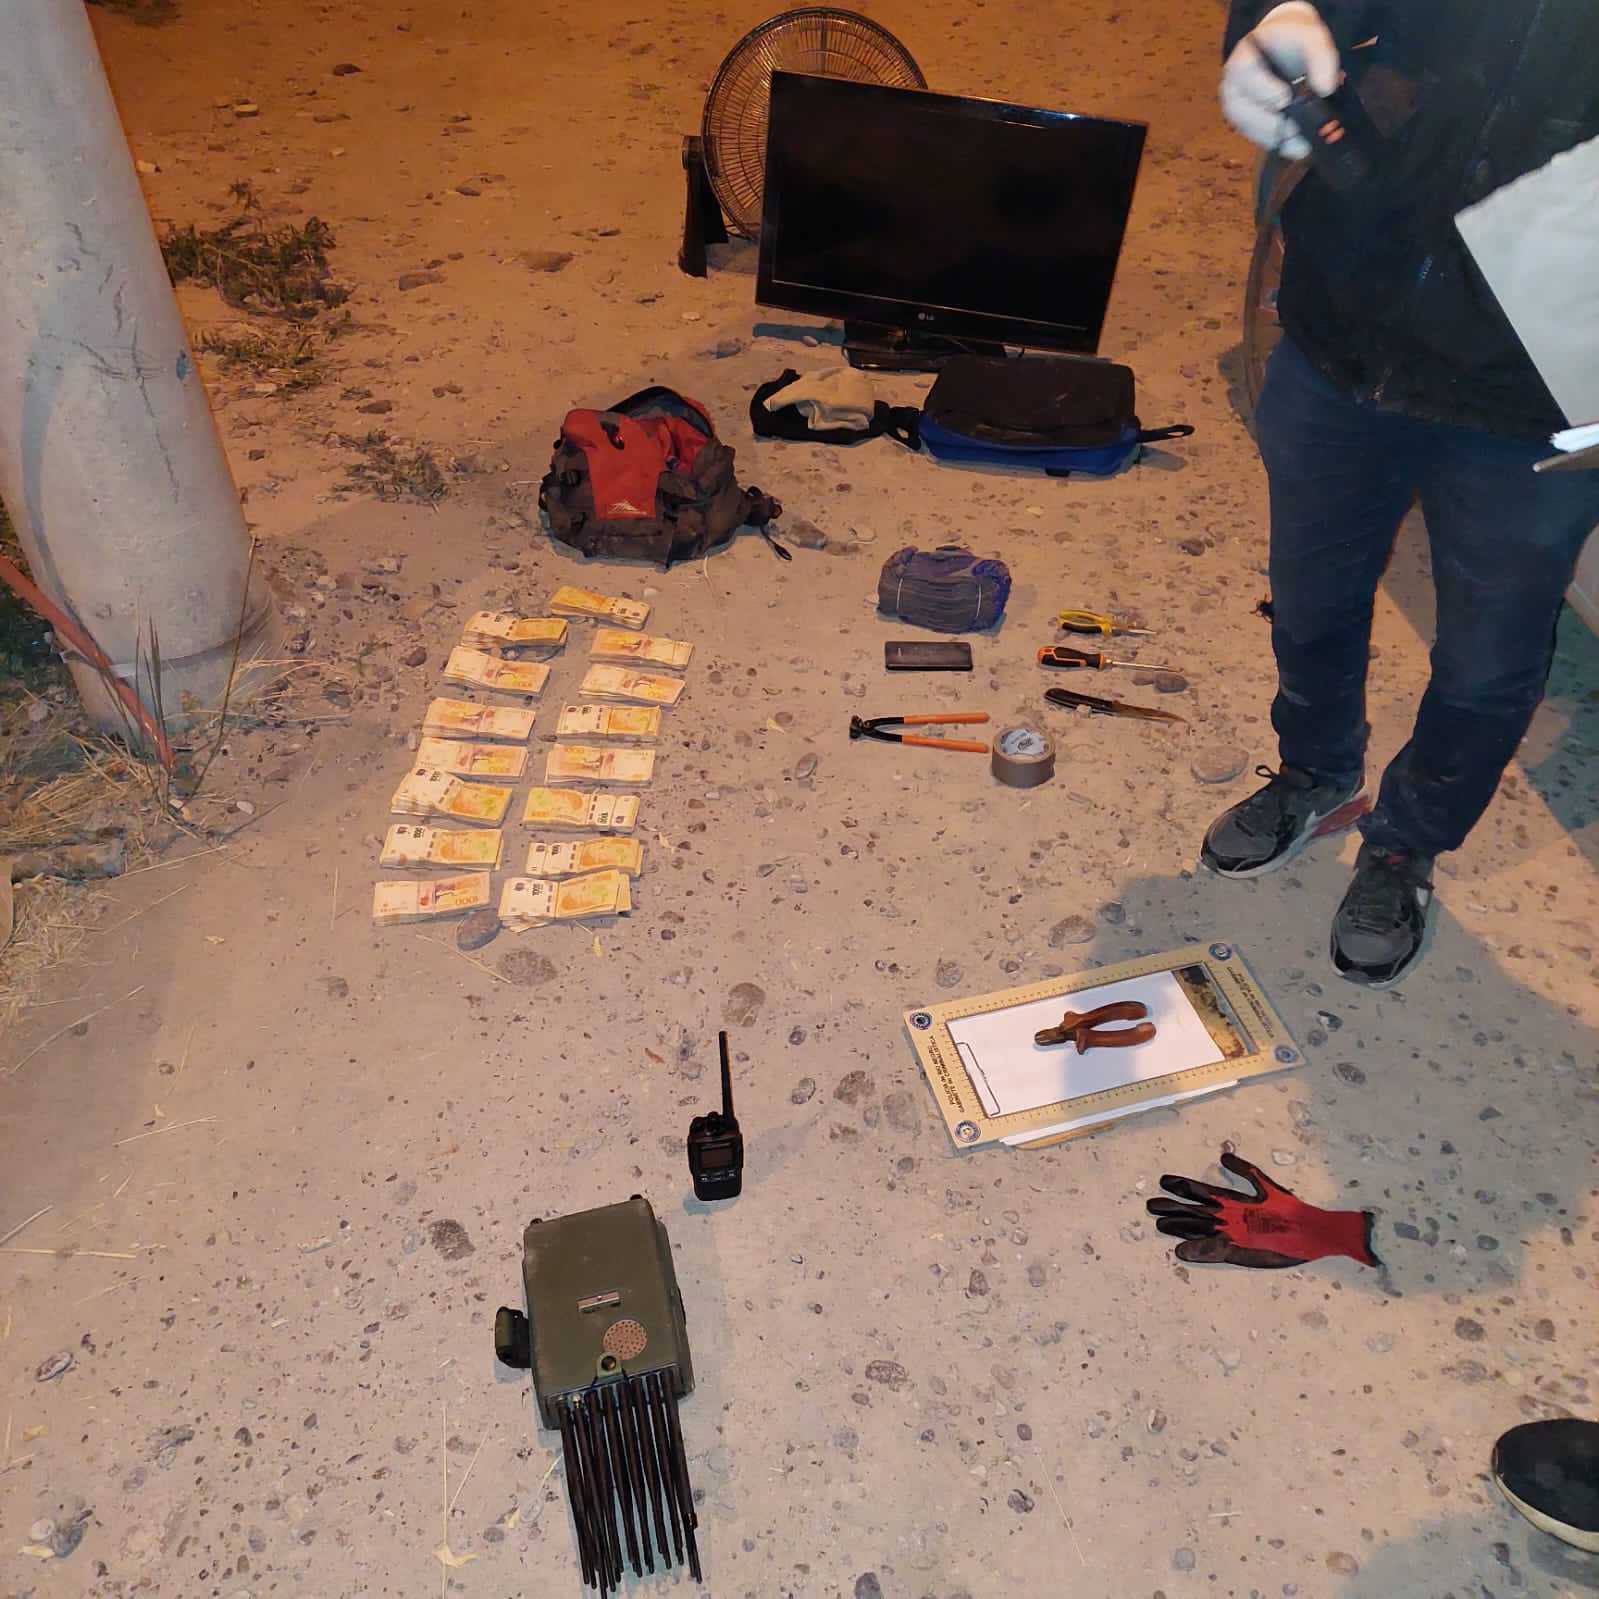 La policía secuestró un equipo inhibidor de alarmas y el dinero robado de la empresa frutícola. foto: gentileza.